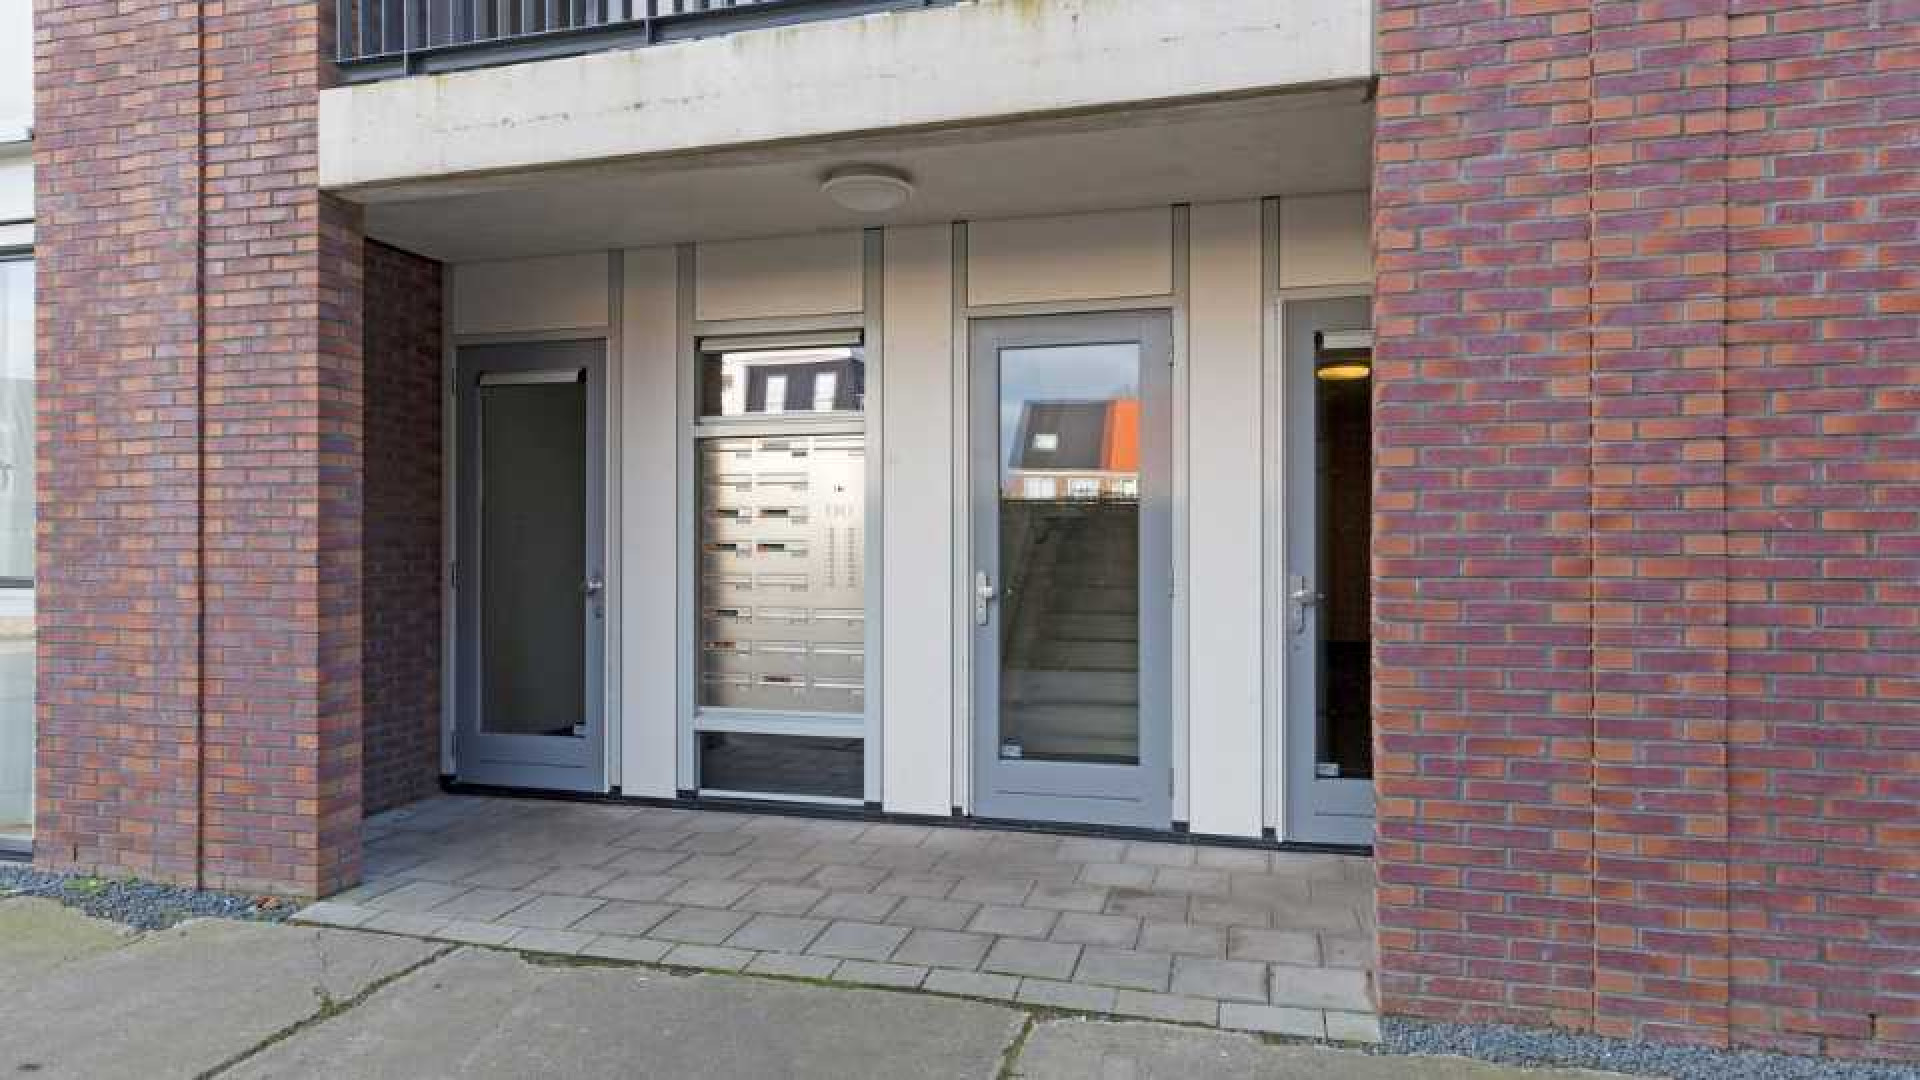 Dave Roelvink koopt eigen appartement in Landsmeer. Zie foto's